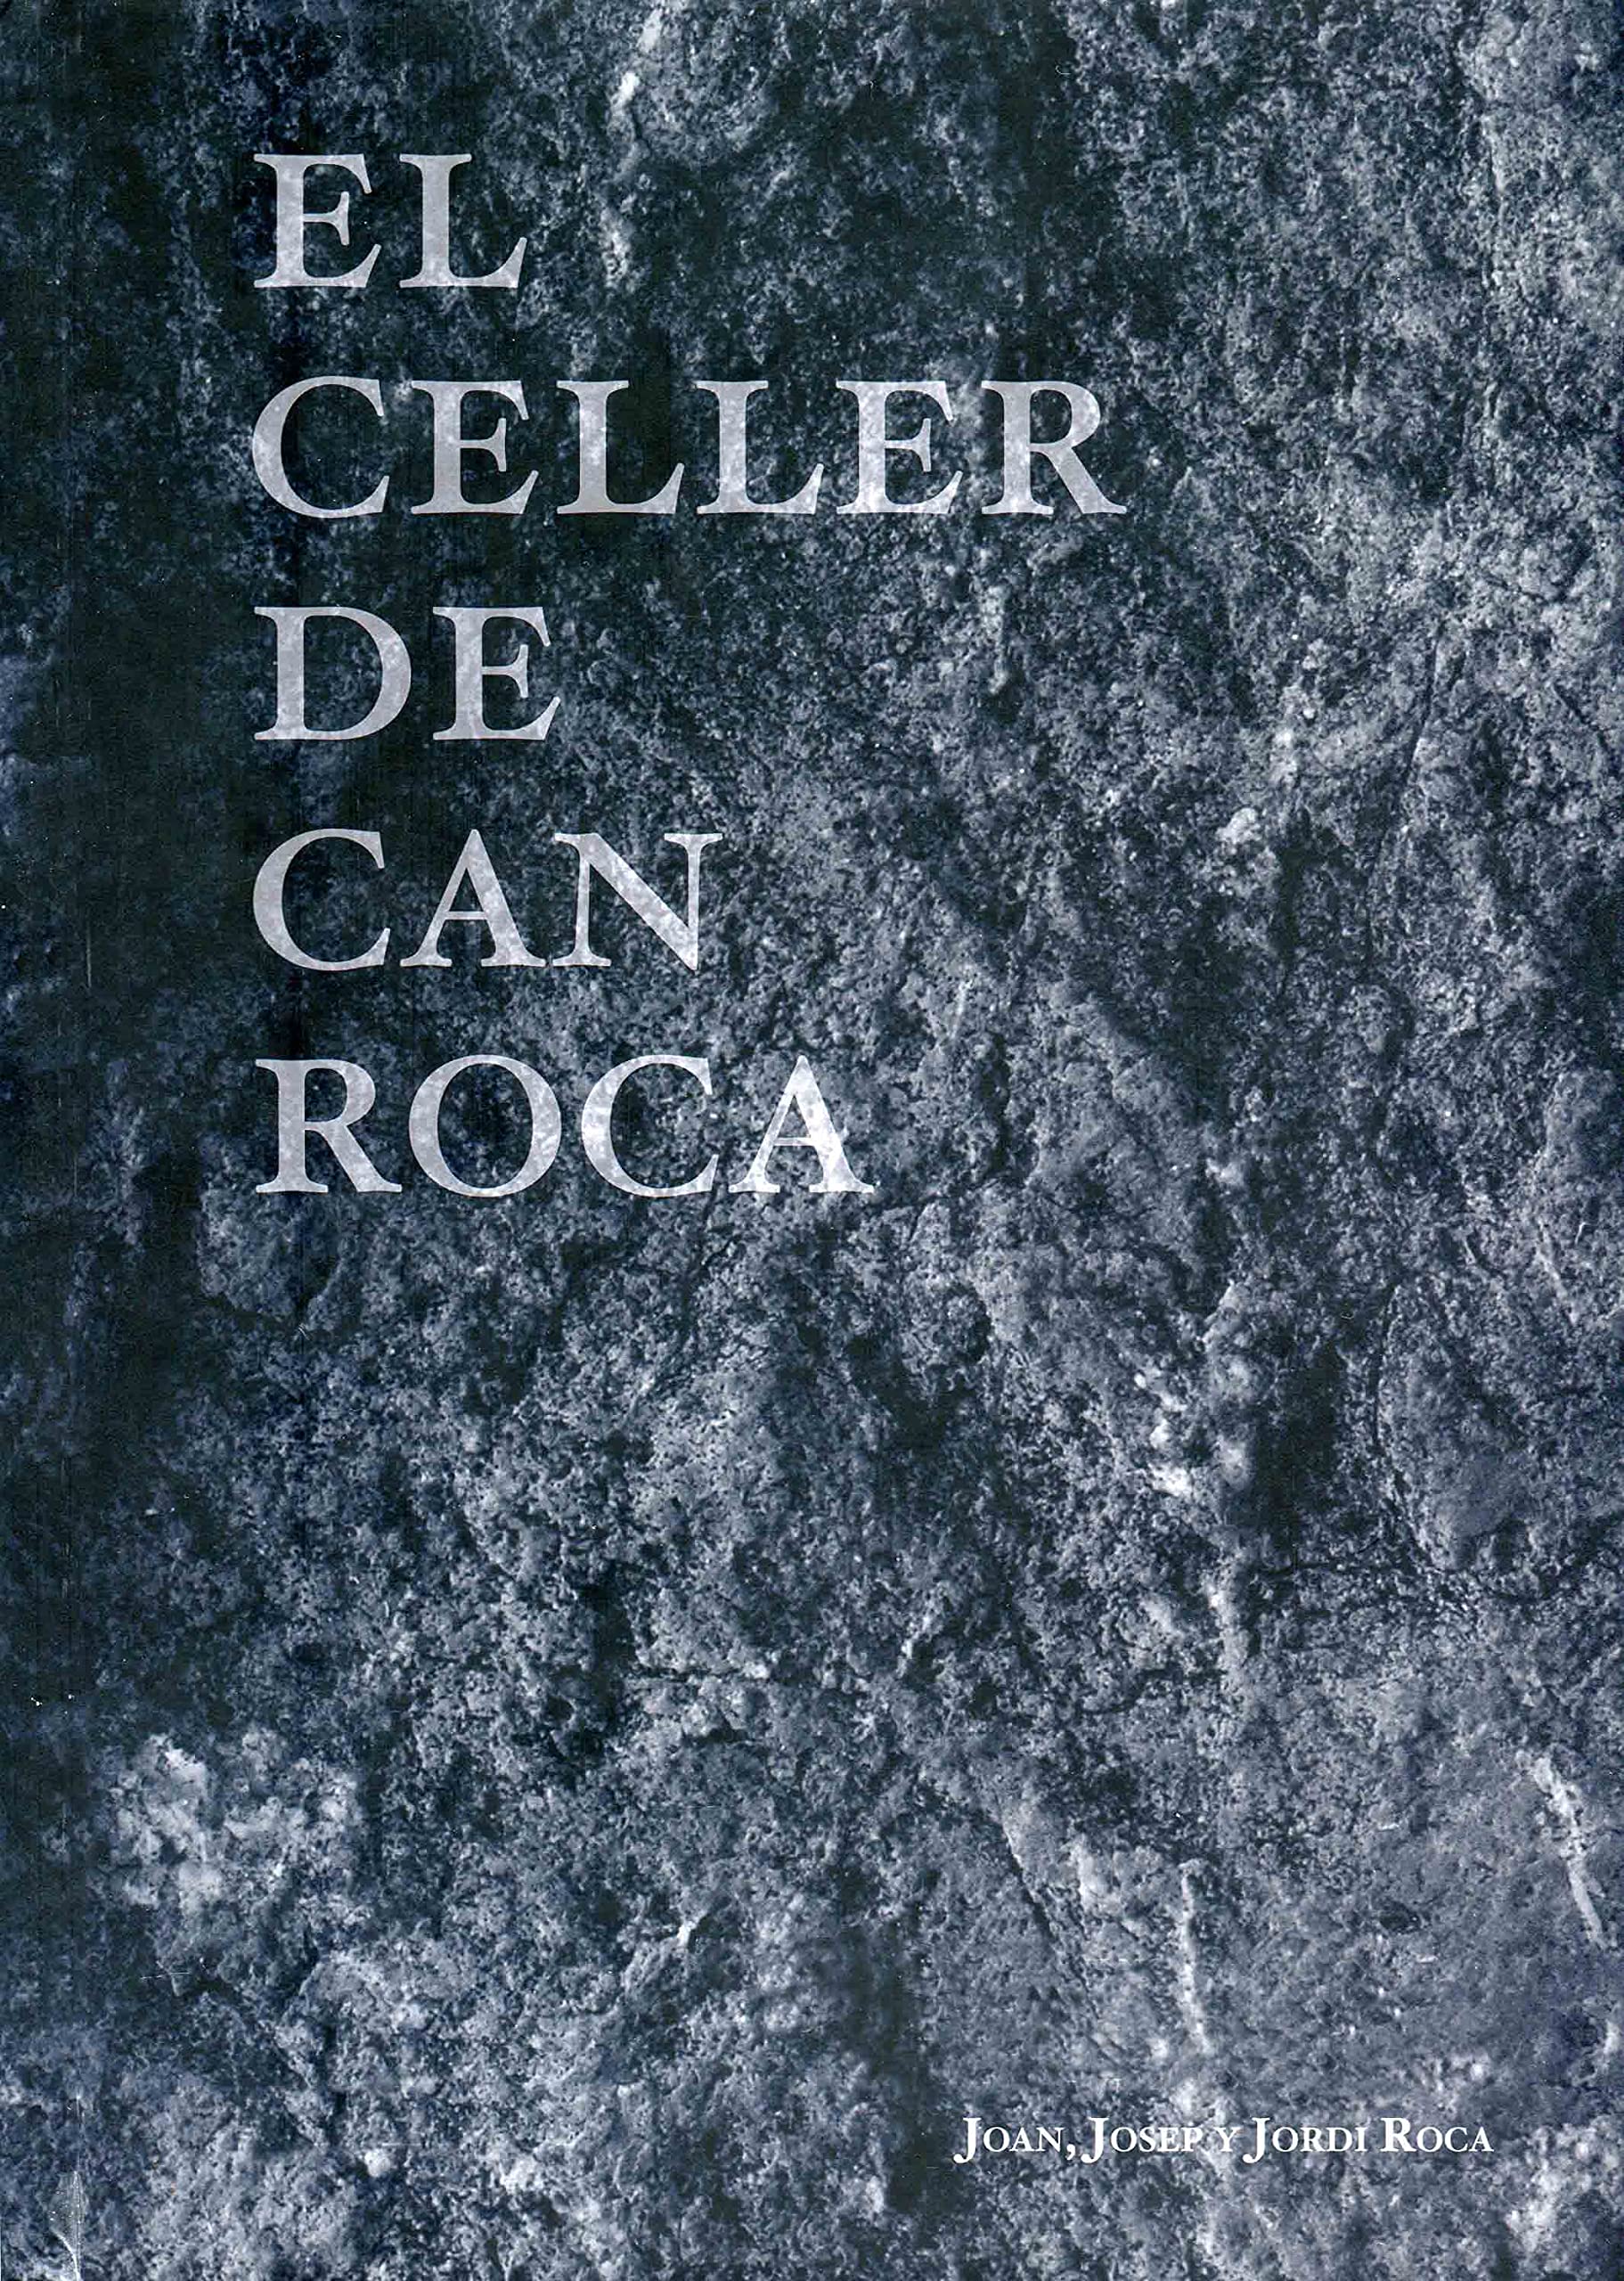 El Celler de Can Roca (Joan, Josep & Jordi Roca)